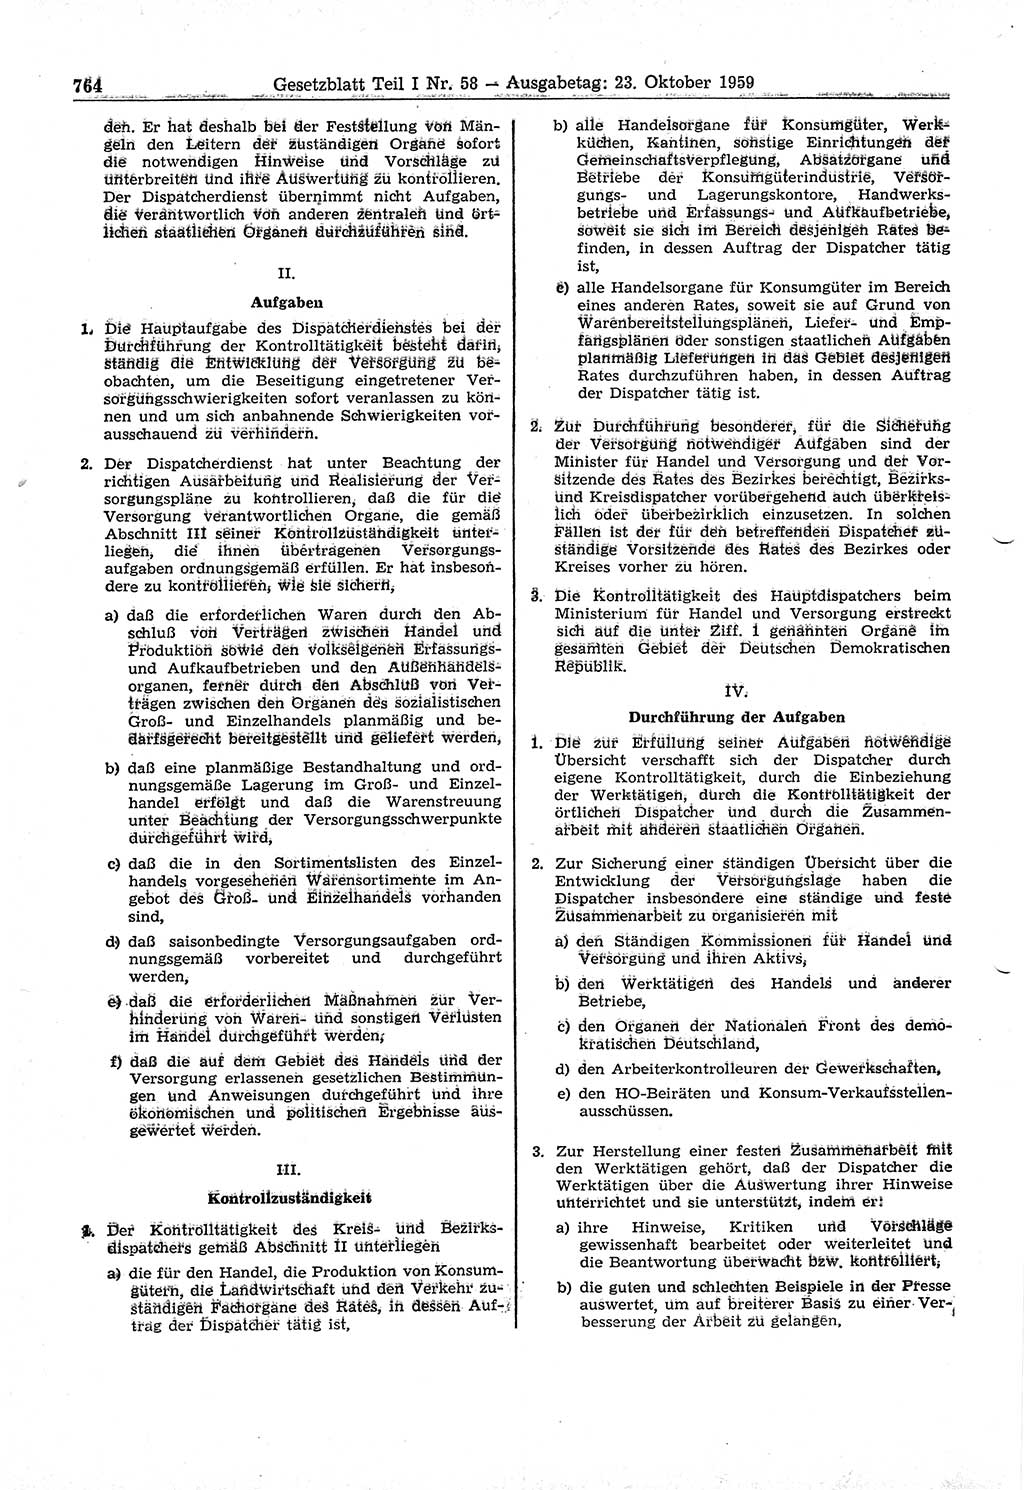 Gesetzblatt (GBl.) der Deutschen Demokratischen Republik (DDR) Teil Ⅰ 1959, Seite 764 (GBl. DDR Ⅰ 1959, S. 764)